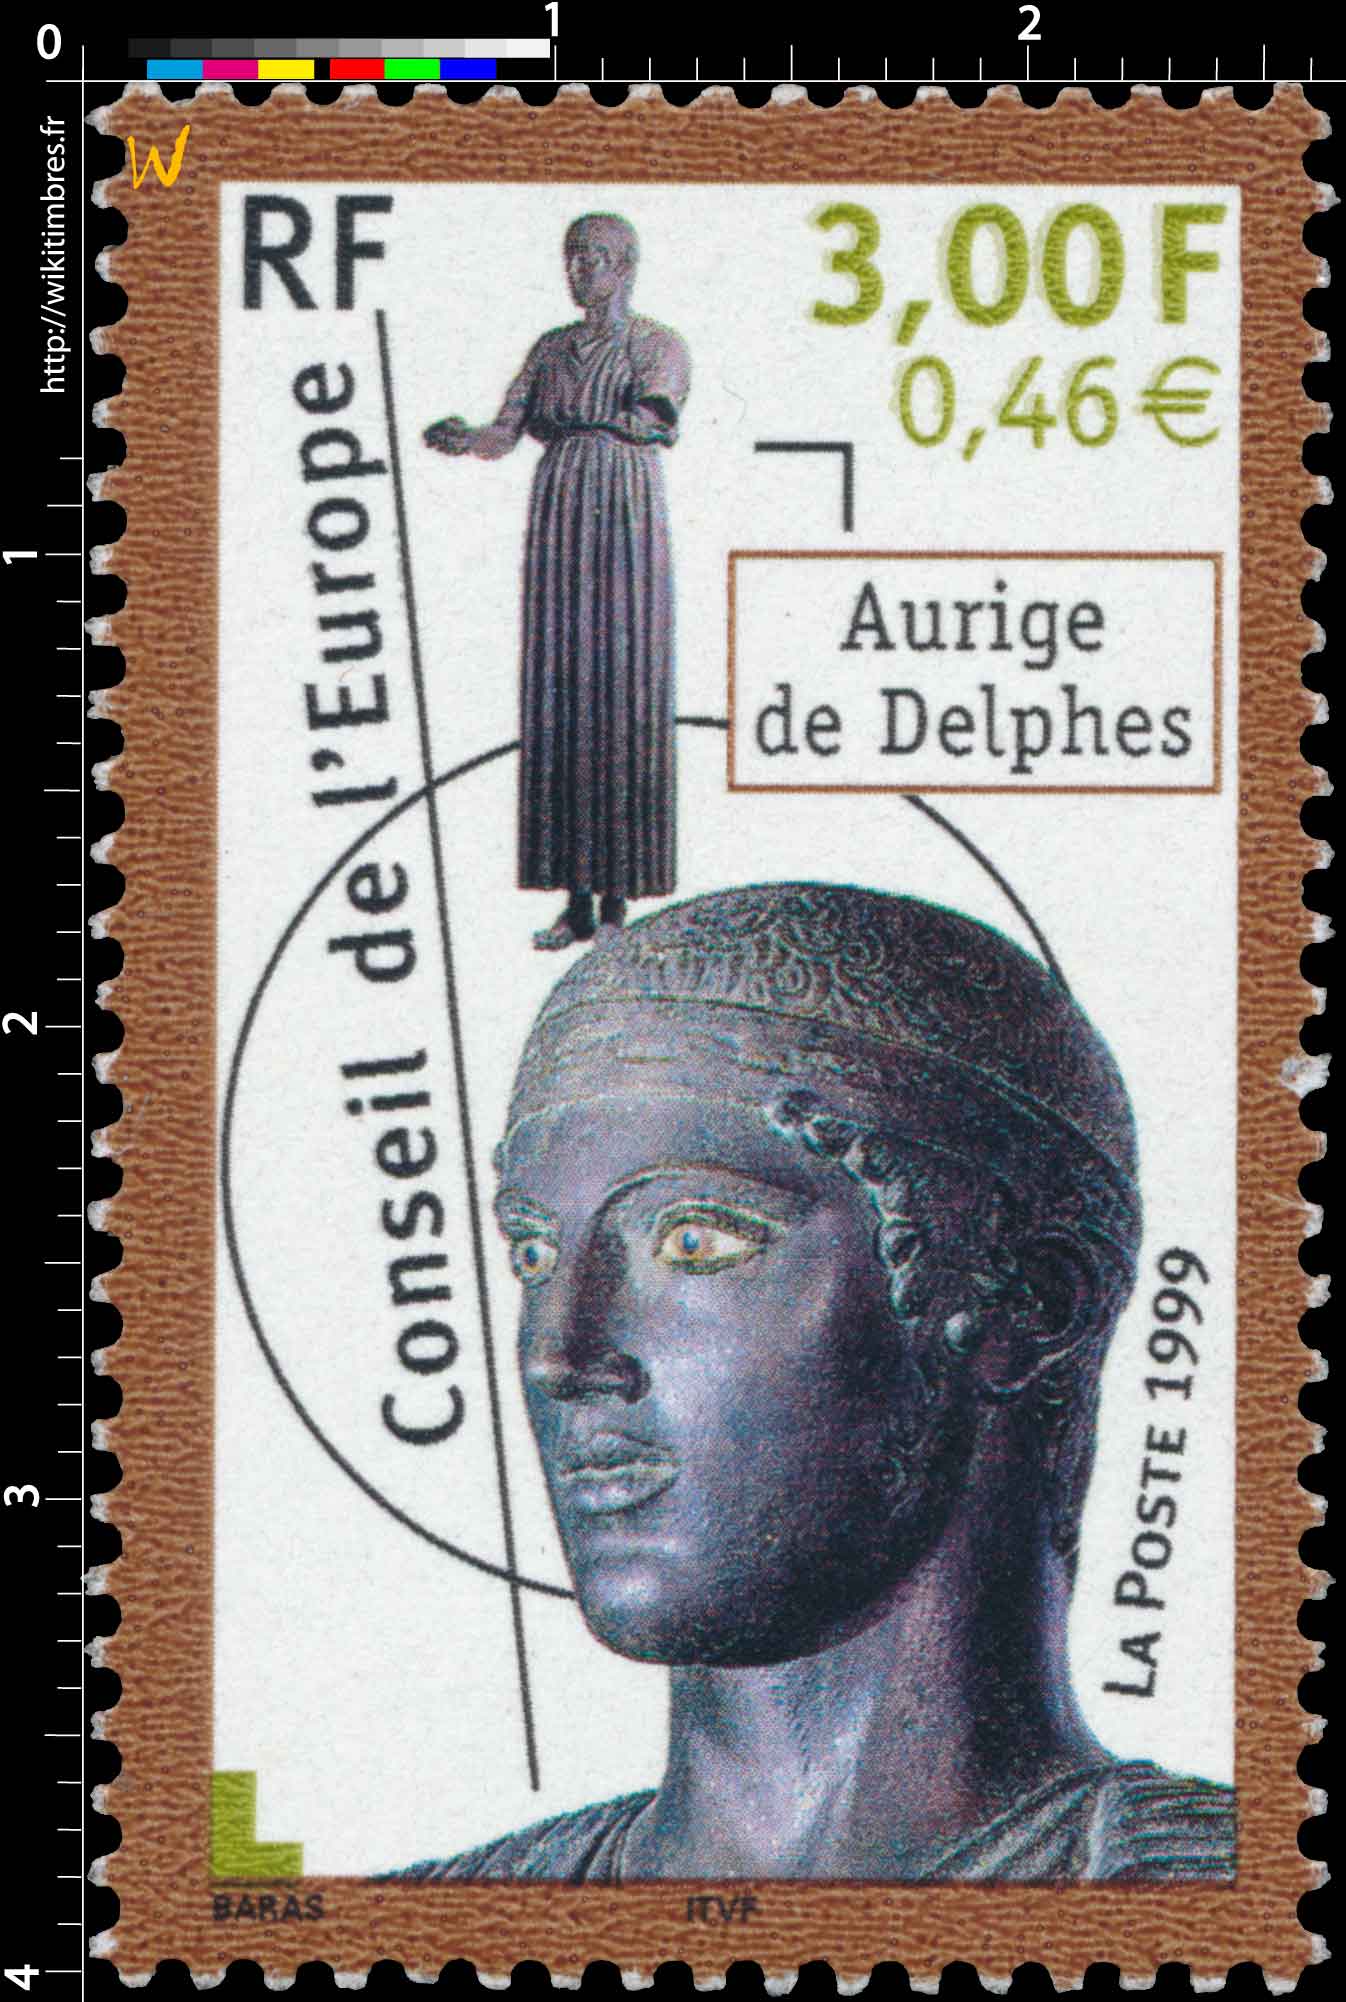 1999 Conseil de l'Europe Aurige de Delphes